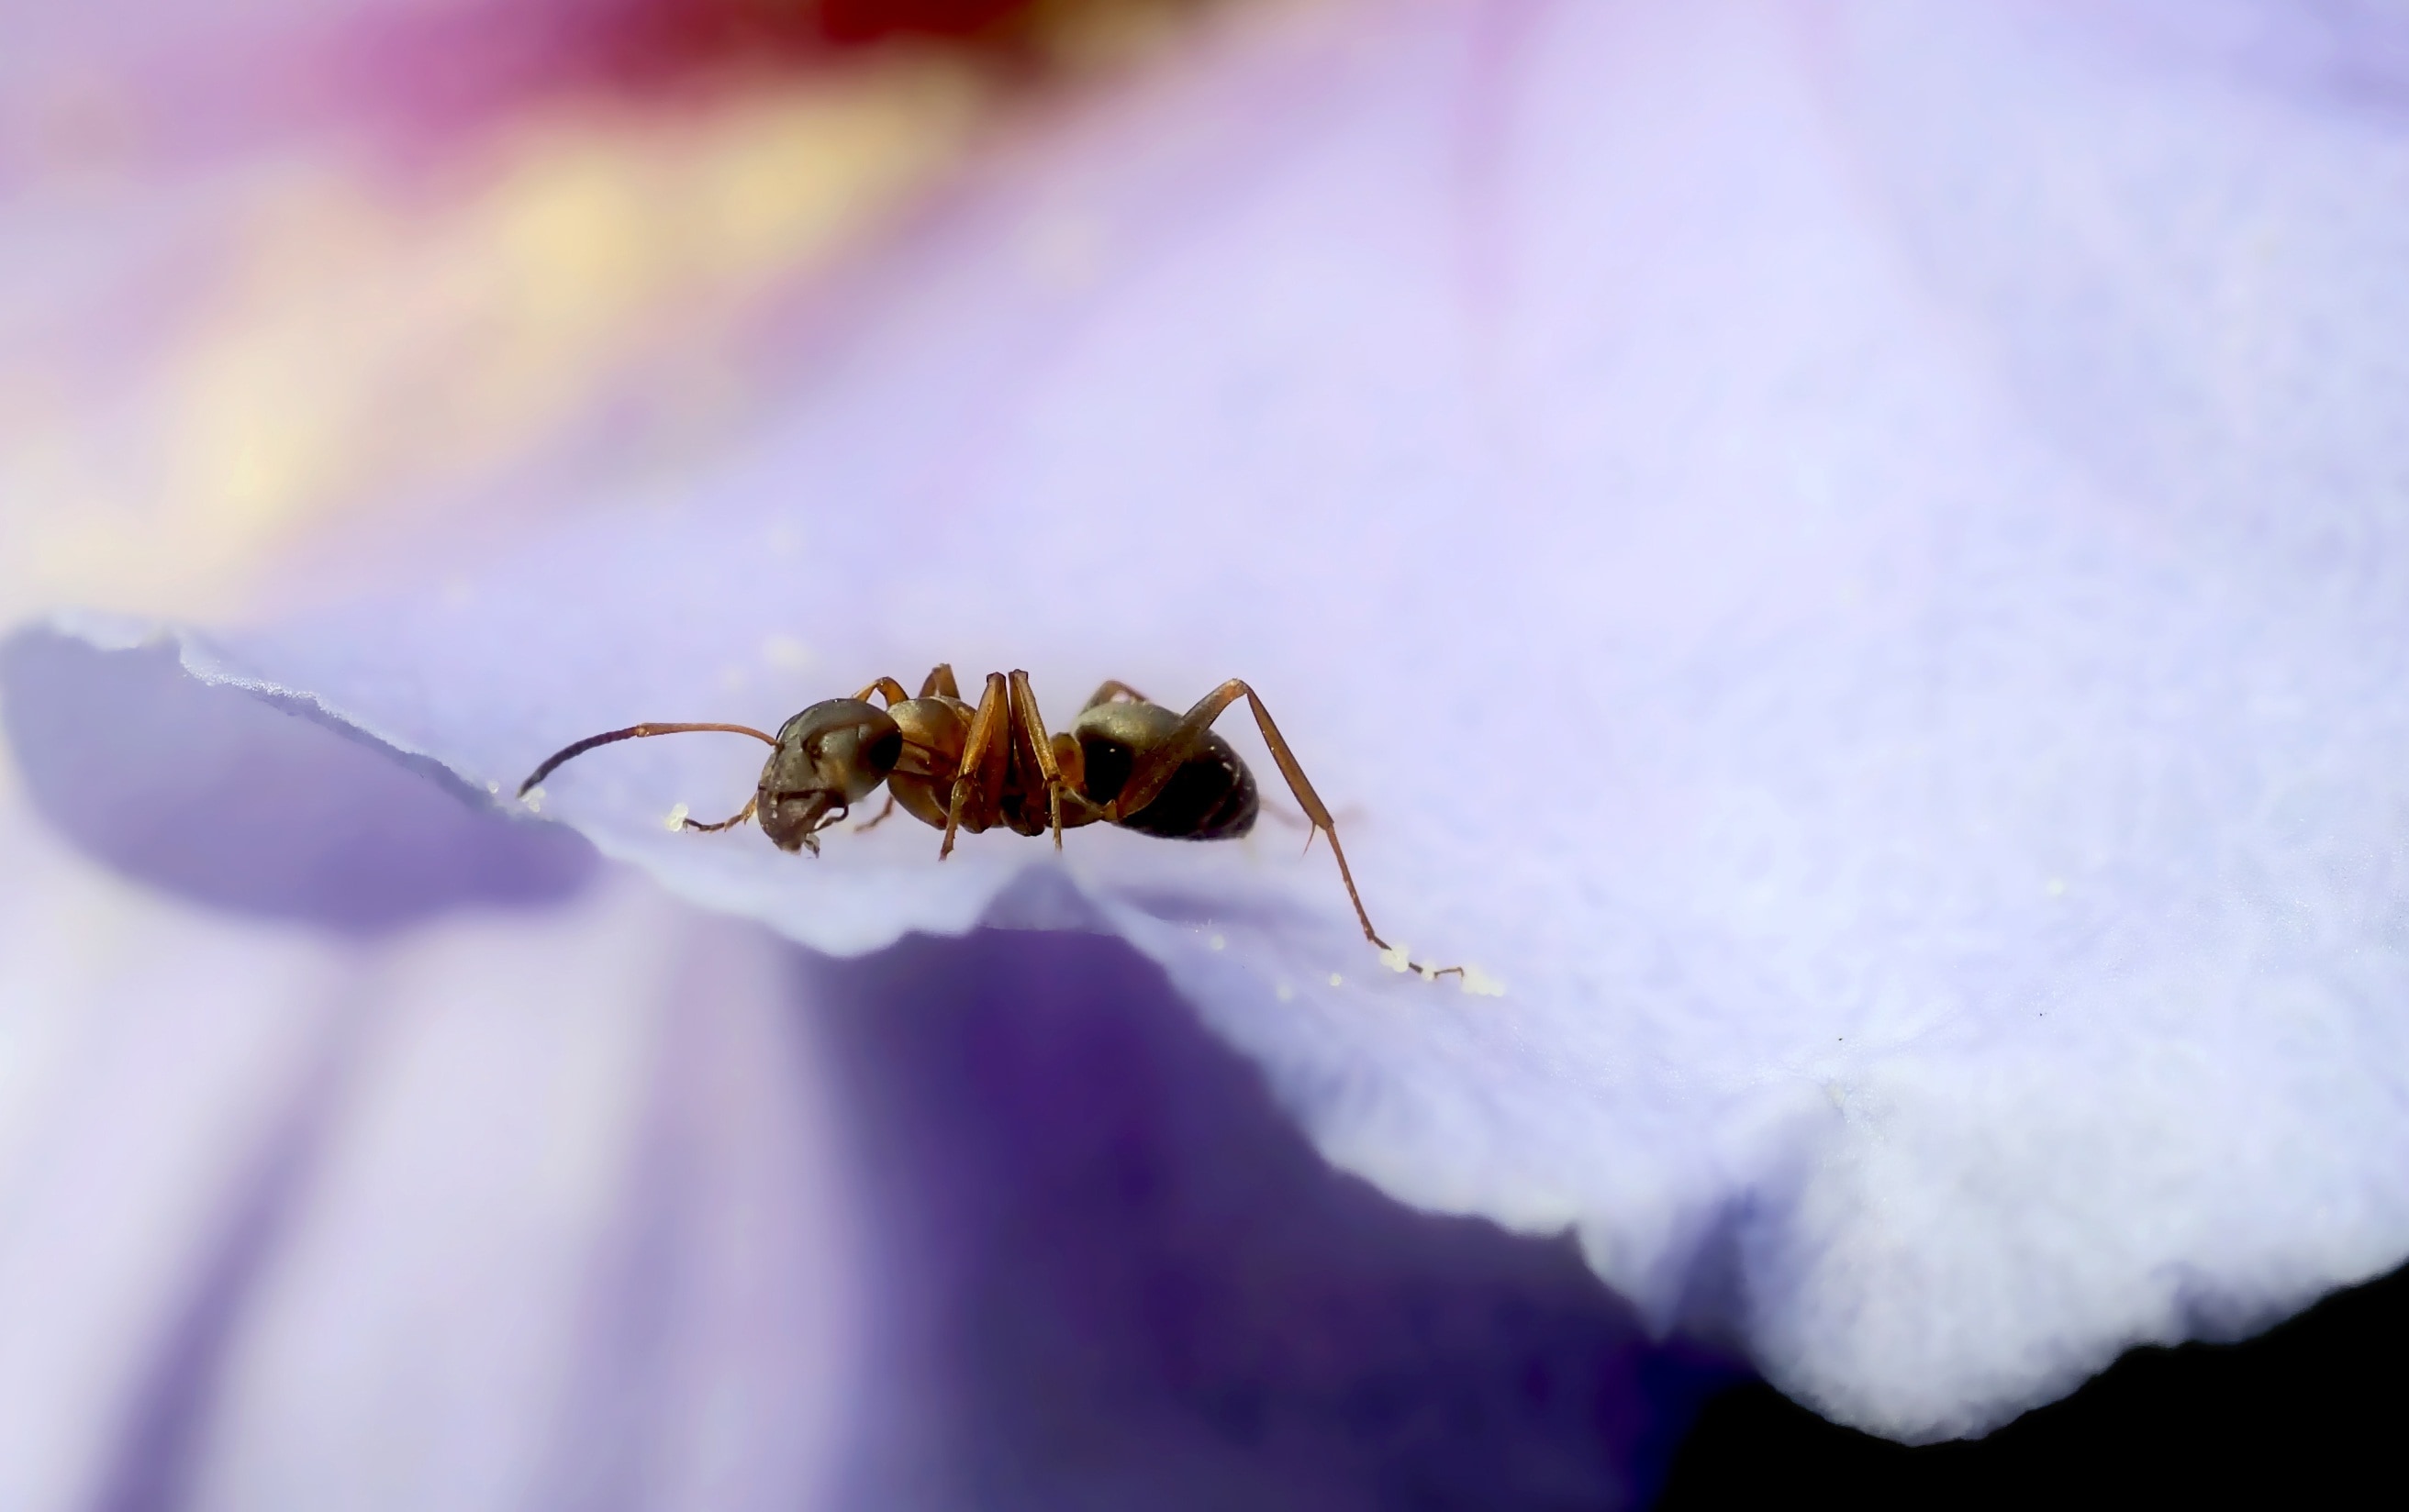 brown ant on flower's petal